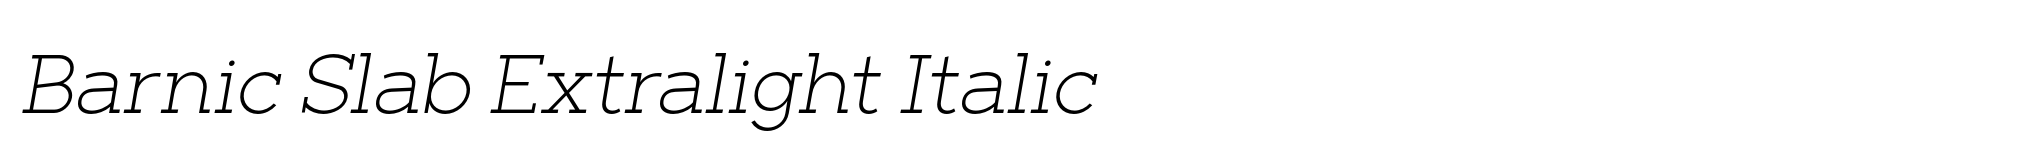 Barnic Slab Extralight Italic image